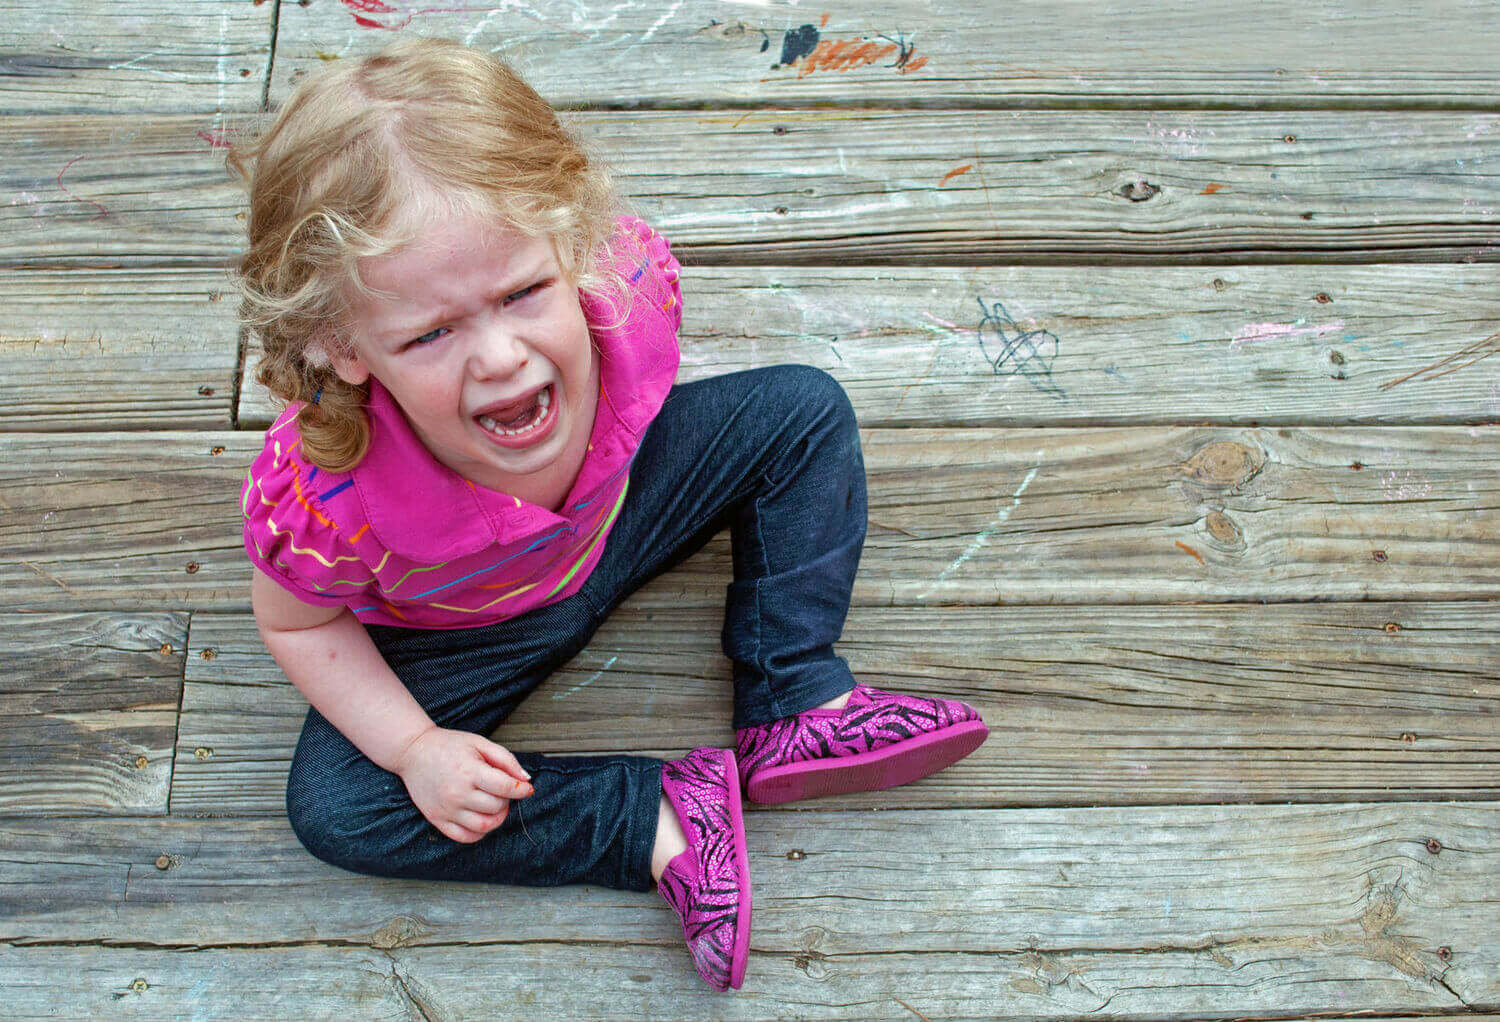 Les crises de colère peuvent être spectaculaires chez les enfants mais elles sont plutôt saines pour leur bien-être émotionnel